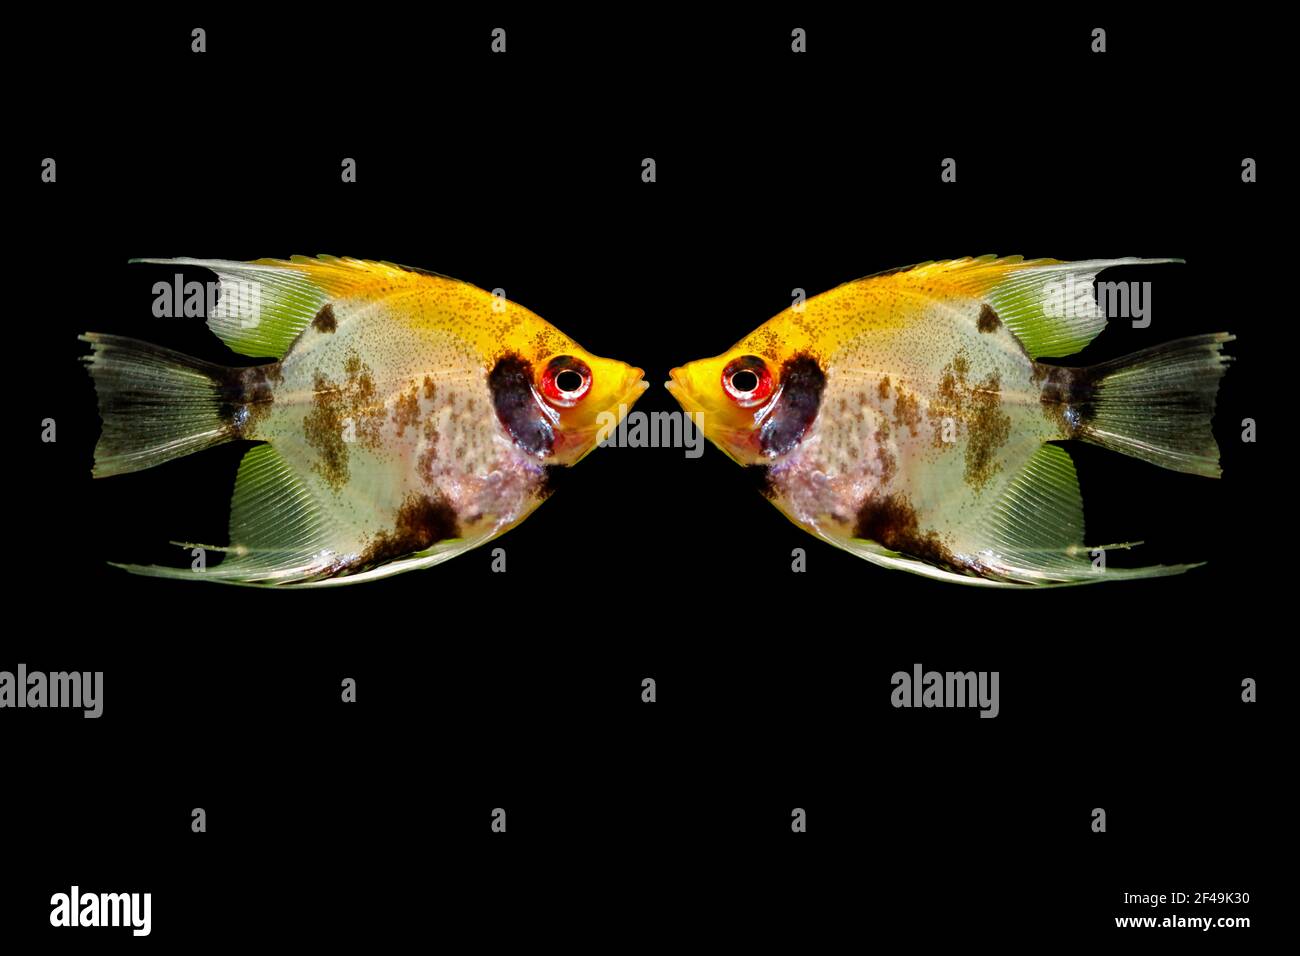 Pesce angelo (Pterophyllum scalare), noto anche come pesce angelo d'acqua dolce, isolato su sfondo nero. Immagine composita di due pesci. Foto Stock